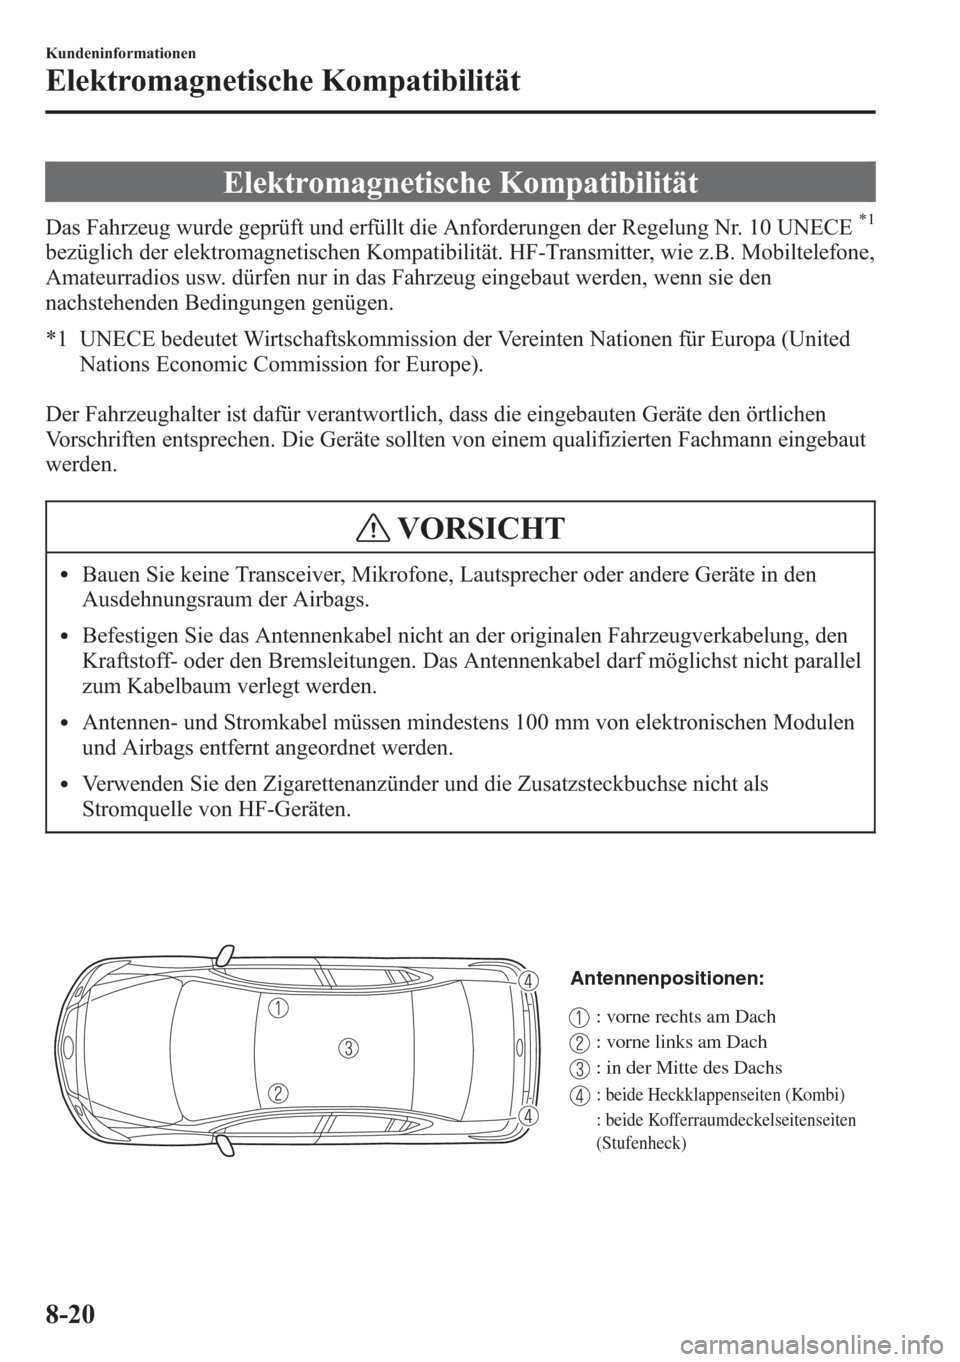 MAZDA MODEL 6 2015  Betriebsanleitung (in German) Elektromagnetische Kompatibilität
Das Fahrzeug wurde geprüft und erfüllt die Anforderungen der Regelung Nr. 10 UNECE*1
bezüglich der elektromagnetischen Kompatibilität. HF-Transmitter, wie z.B. M